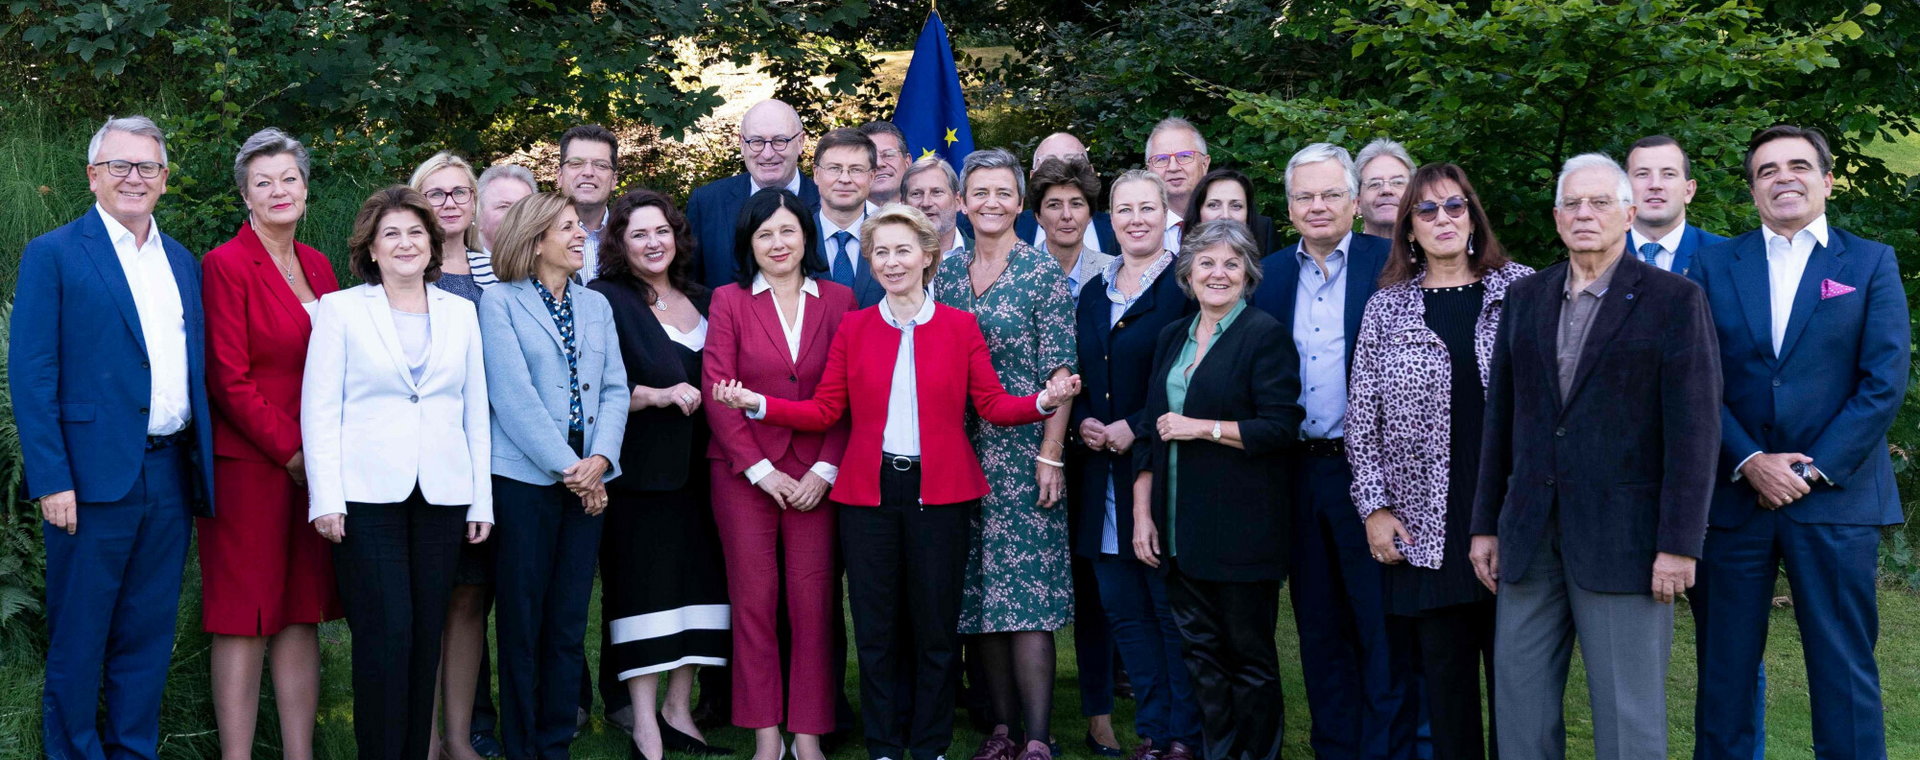 Komisja Europejska, zdjęcie pamiątkowe komisarzy z 2019 roku